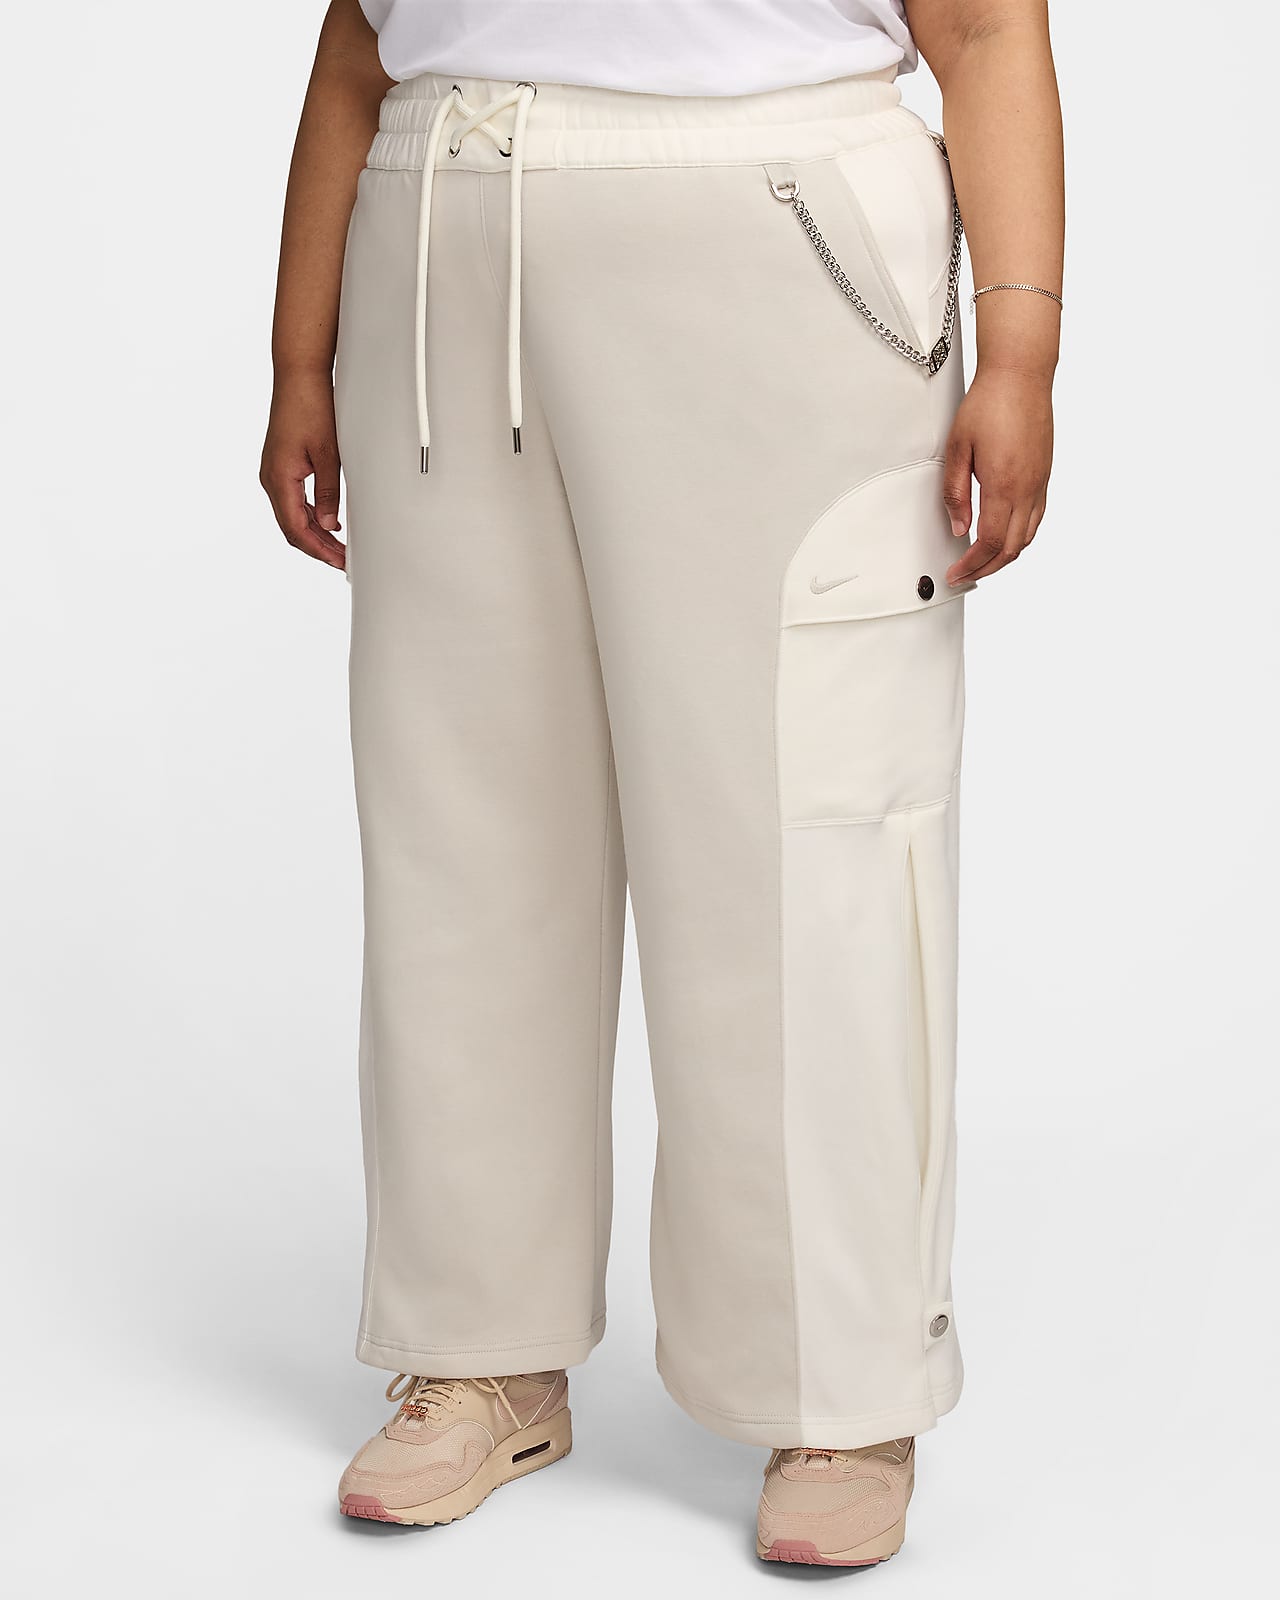 Pants de tejido Fleece para mujer (talla grande) Serena Williams Design Crew